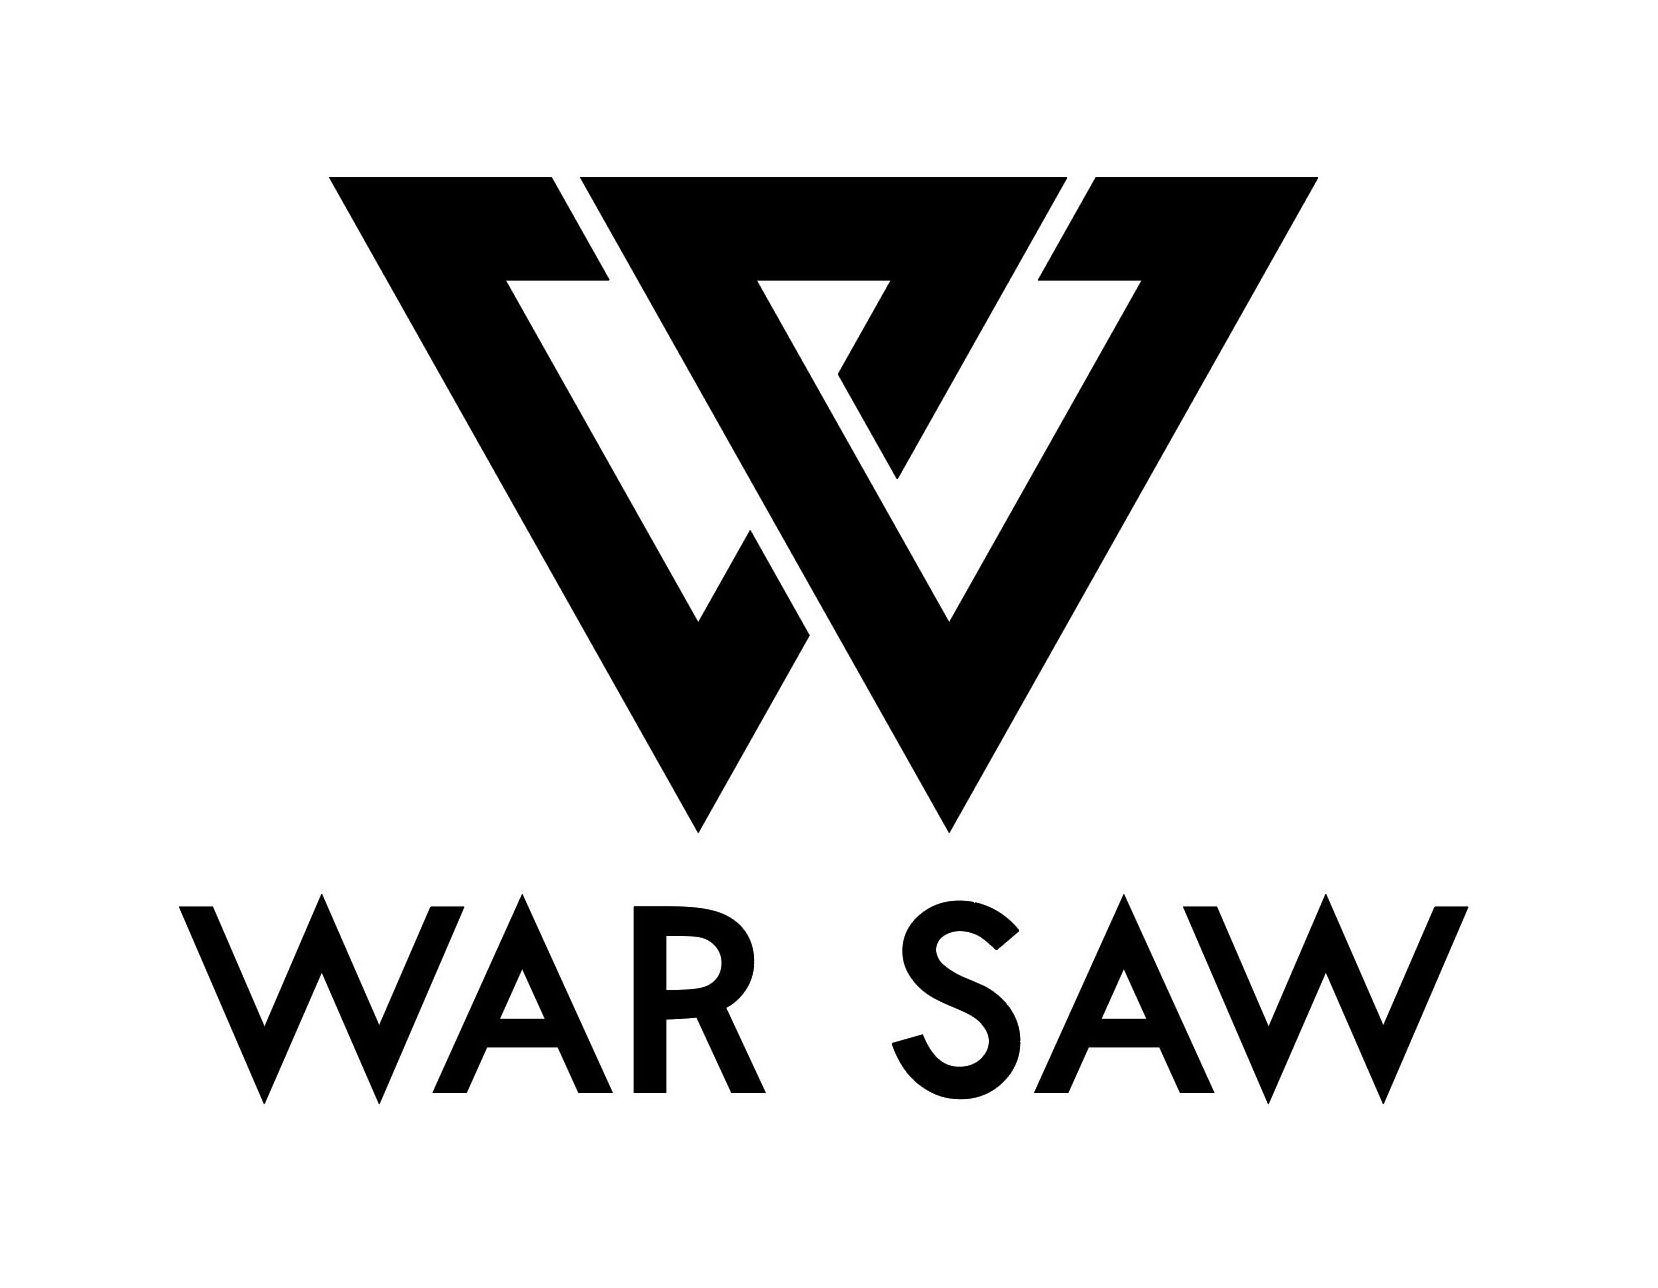  WAR SAW